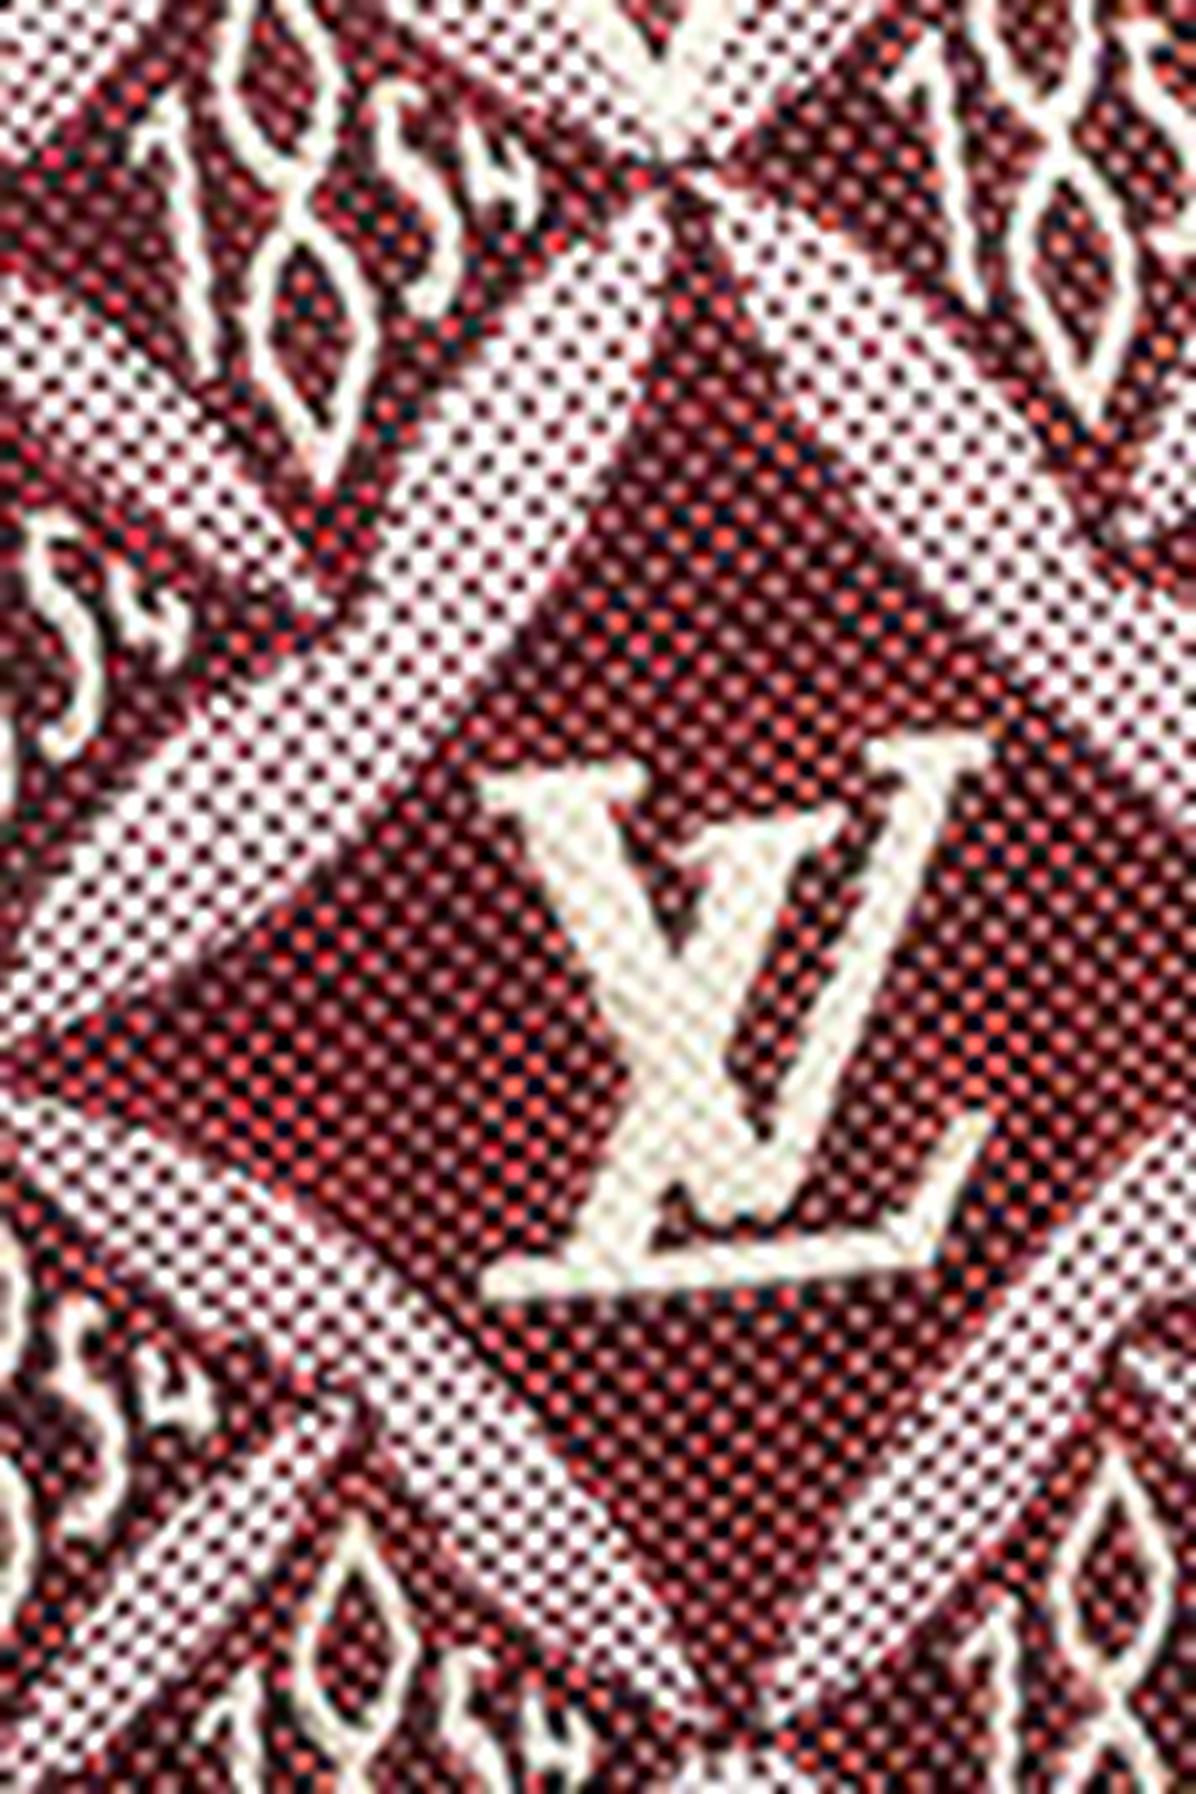 Louis Vuitton Ltd. Ed. since 1854 Speedy Bandouliere 25 in Pink